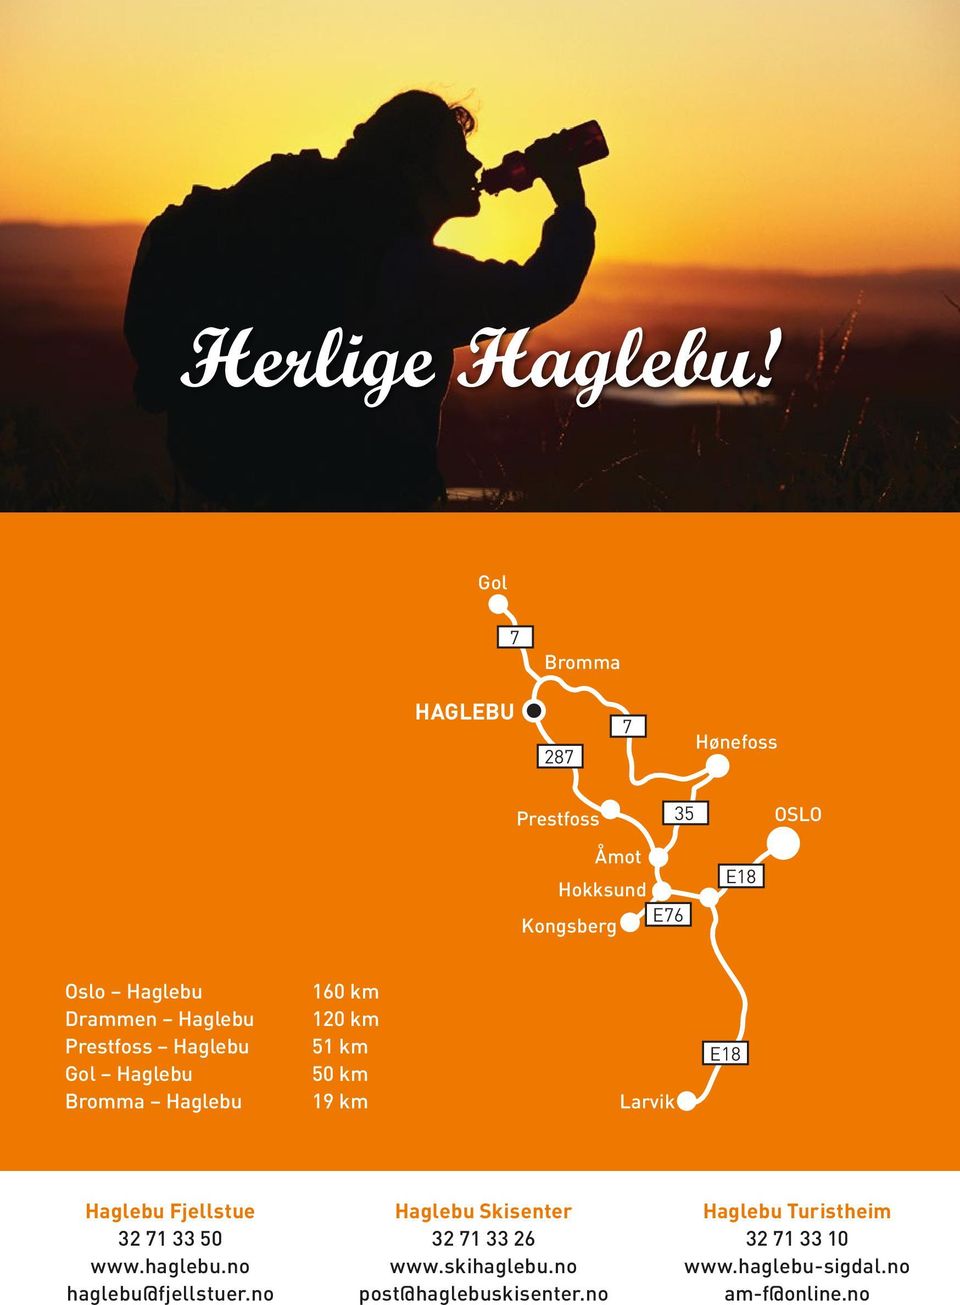 Haglebu Prestfoss Haglebu Gol Haglebu Bromma Haglebu 160 km 120 km 51 km 50 km 19 km Larvik E18 Haglebu